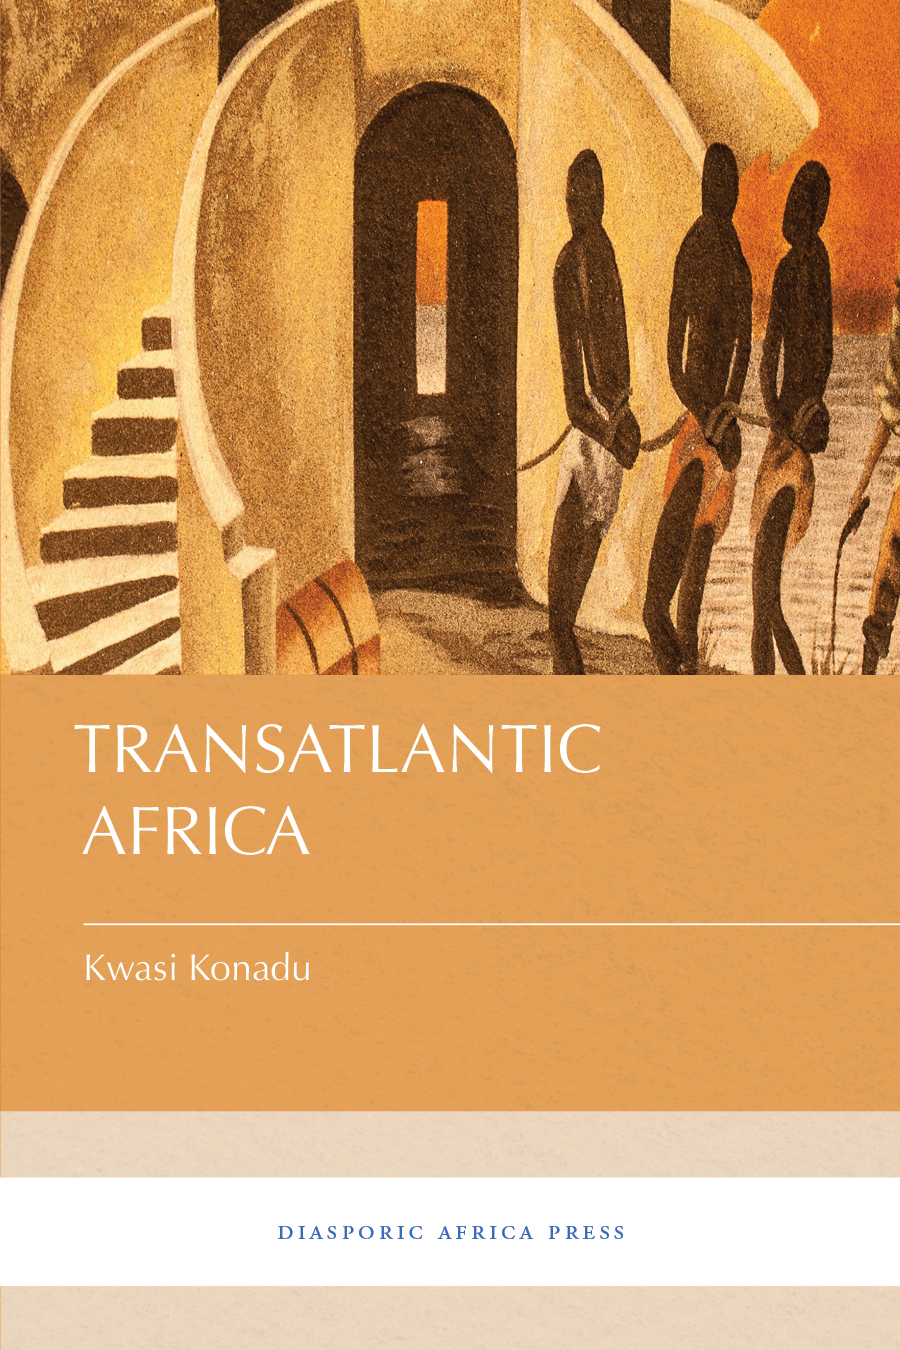 transatlantic-africa-cover.jpg